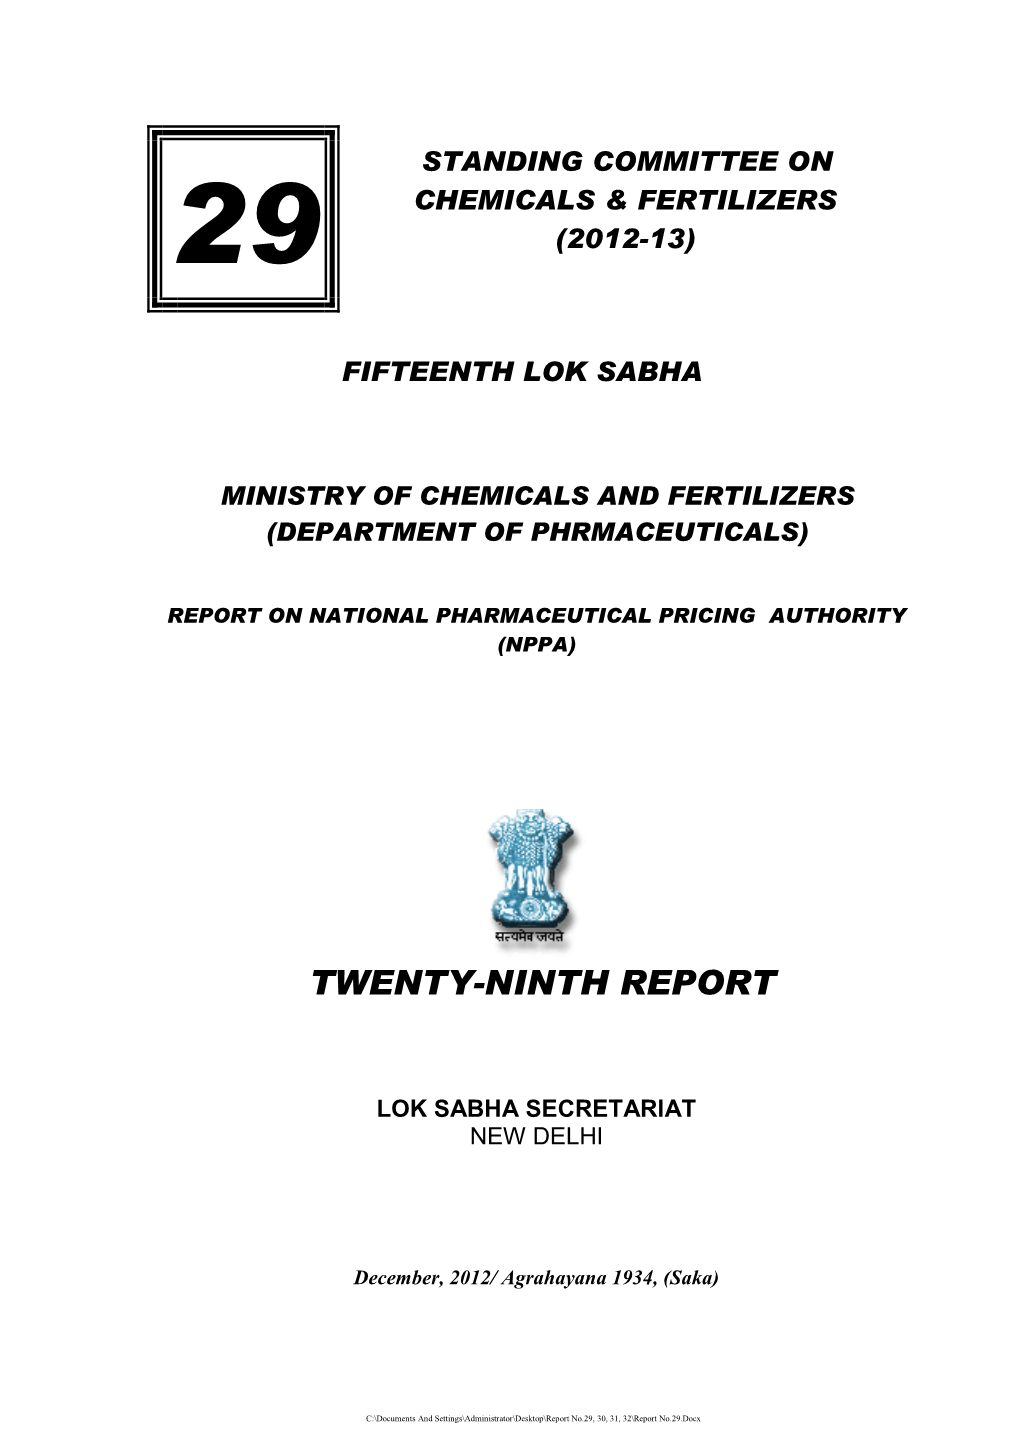 Twenty-Ninth Report